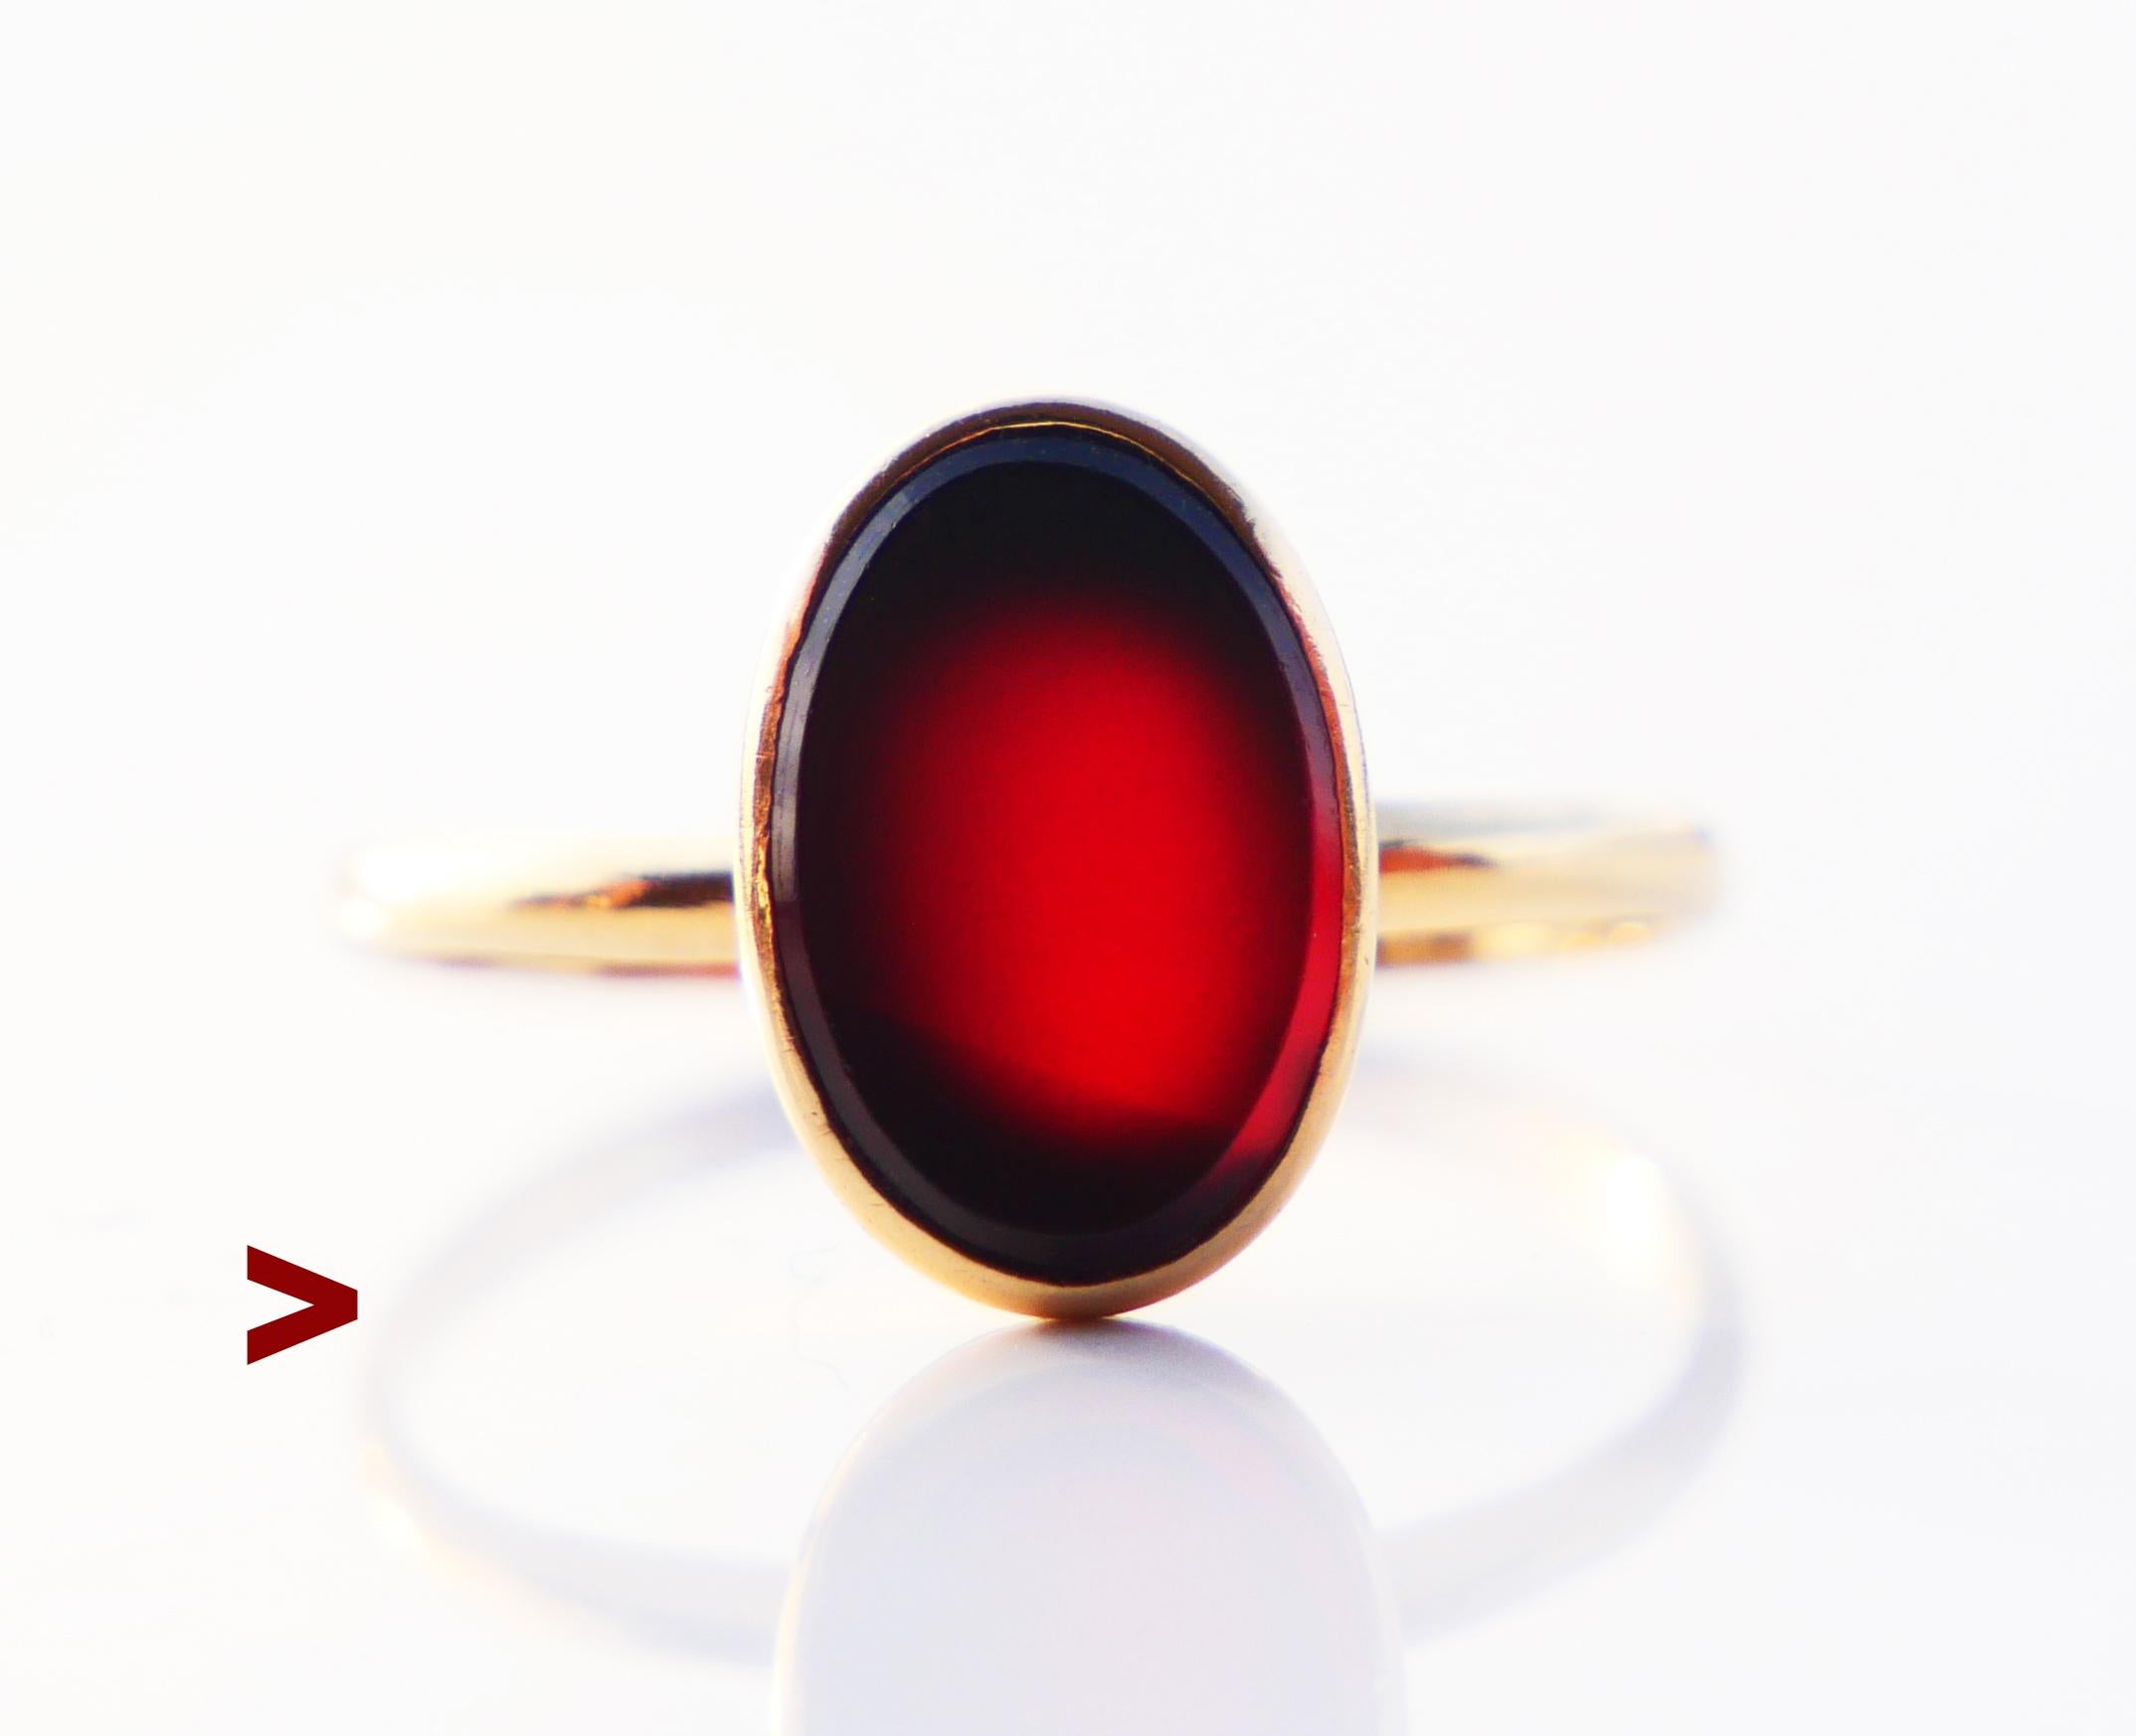 Bague de chevalière avec anneau uni orné d'une plaque polie sertie d'une pierre naturelle d'onyx rouge 9 mm x 6 mm x 3 mm de profondeur / ca 3 ct. La pierre peut changer légèrement de couleur, passant du rouge foncé au noir sous différents